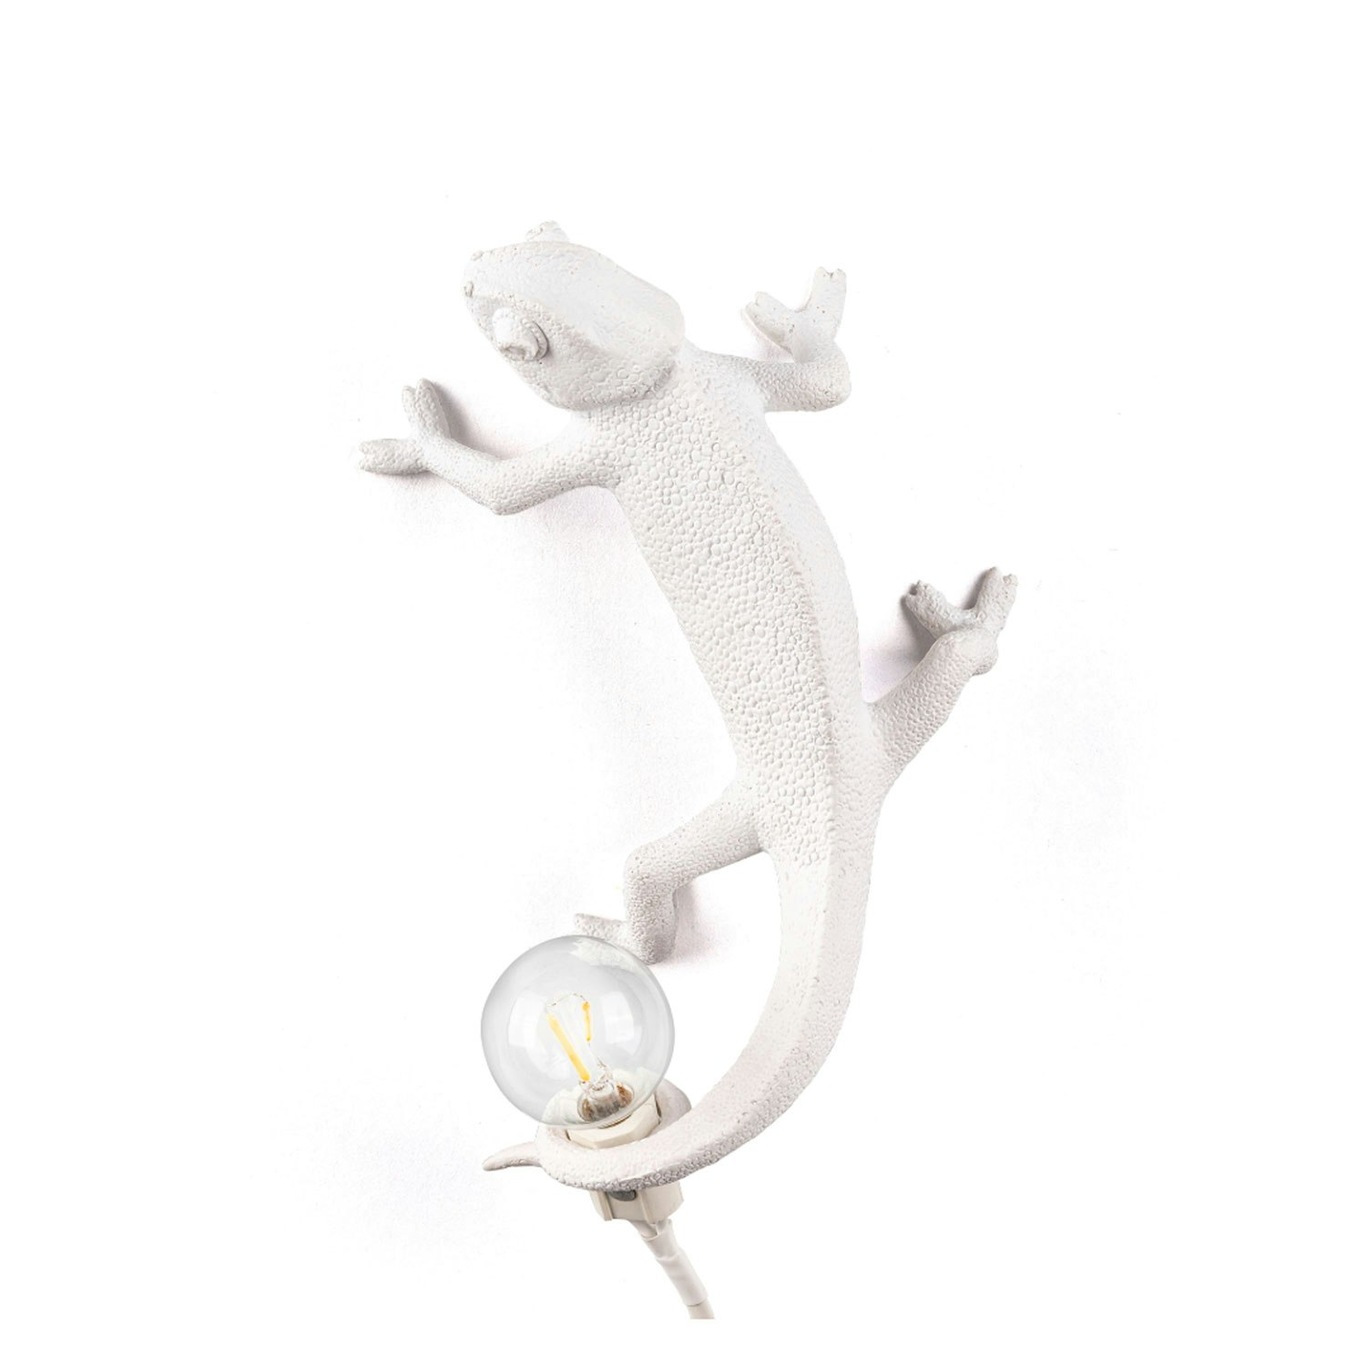 Chameleon Lamp Going Up Vägglampa, Vit